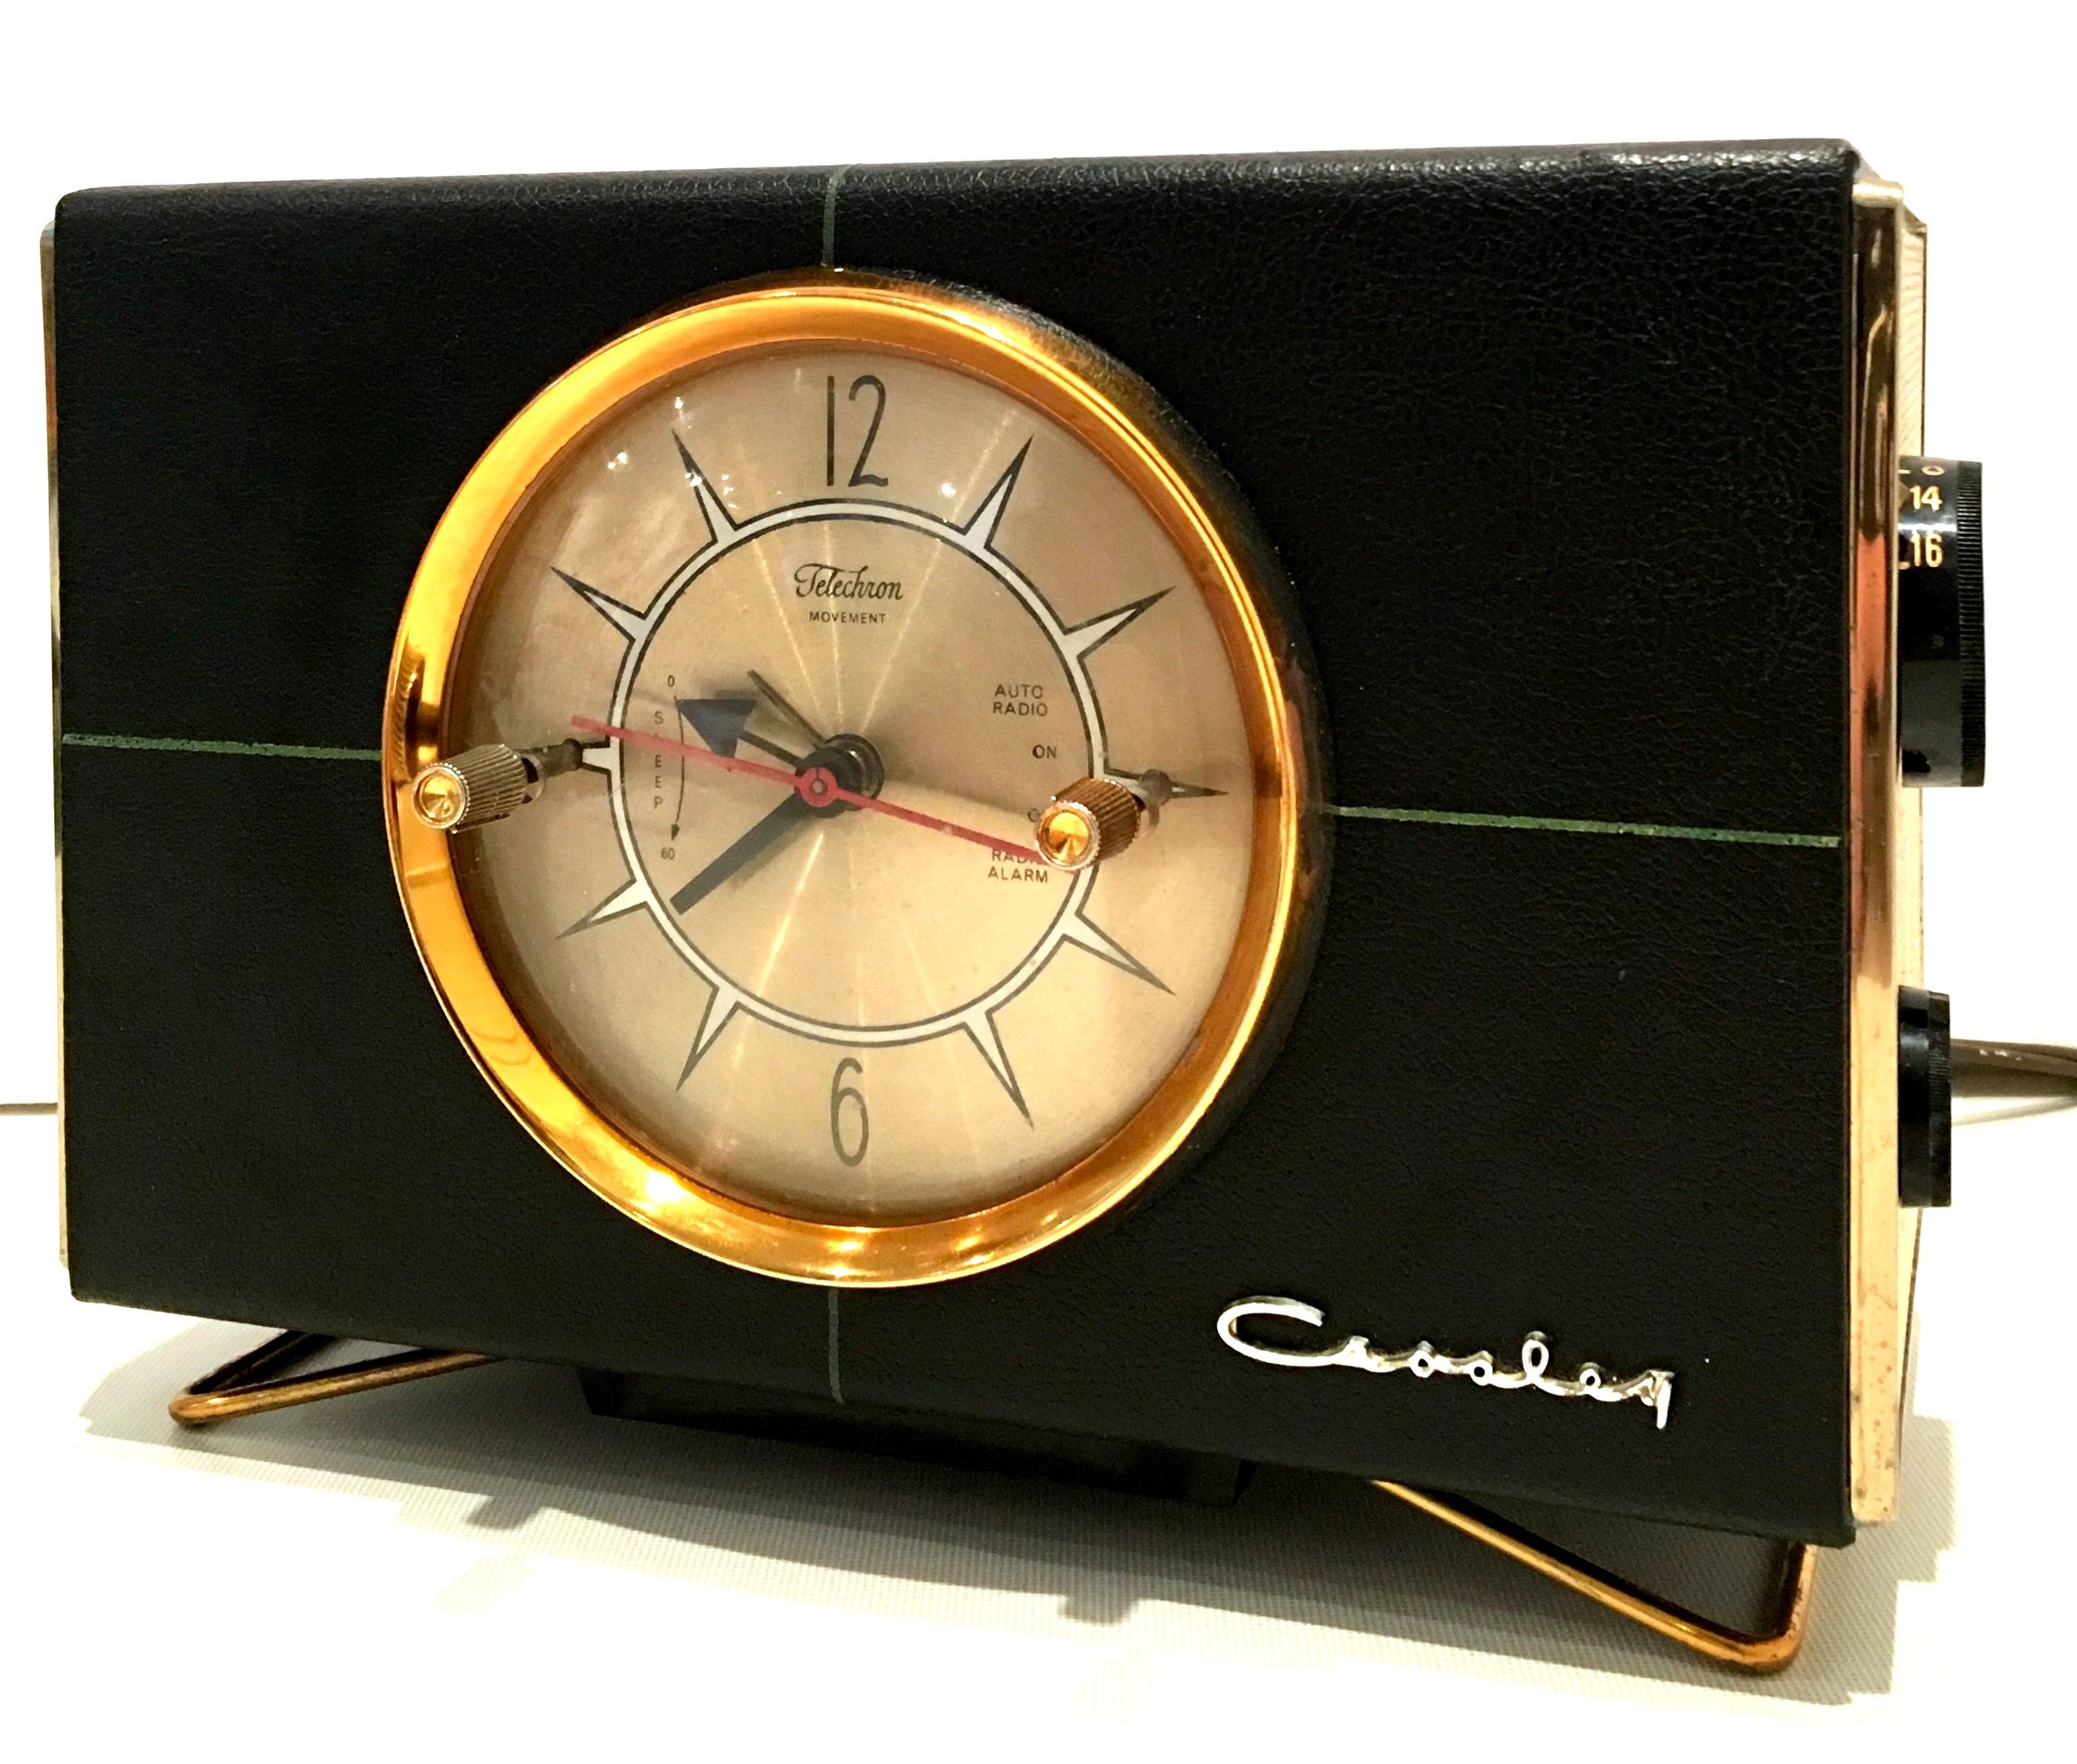 Radio Alarm Clock Vintage - For Sale on 1stDibs